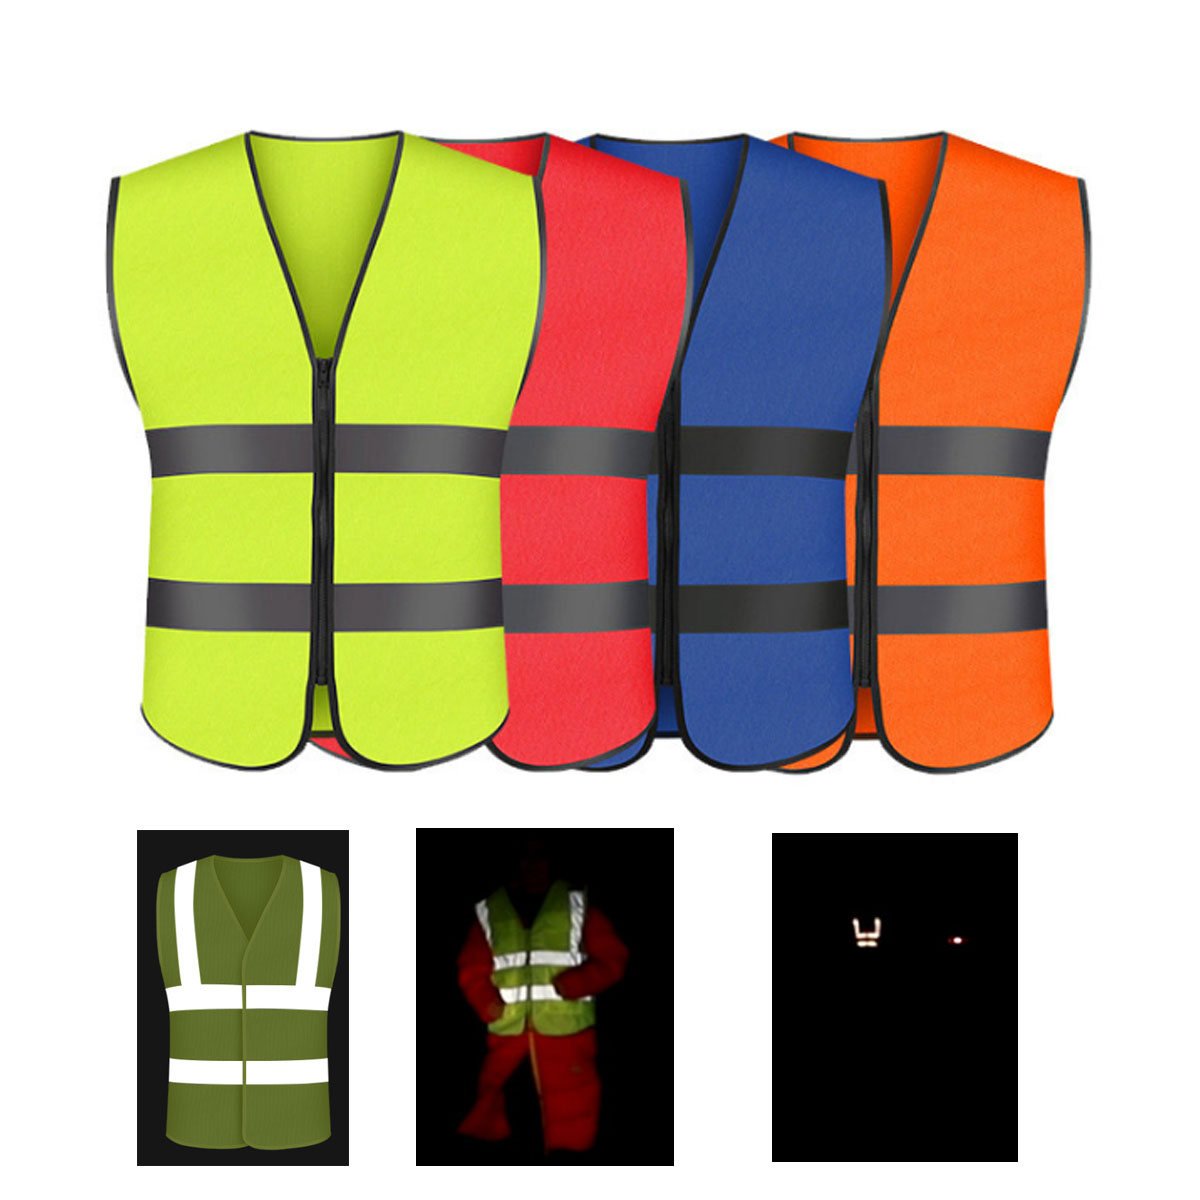 GL-AKL0120 Adult Safety Vest